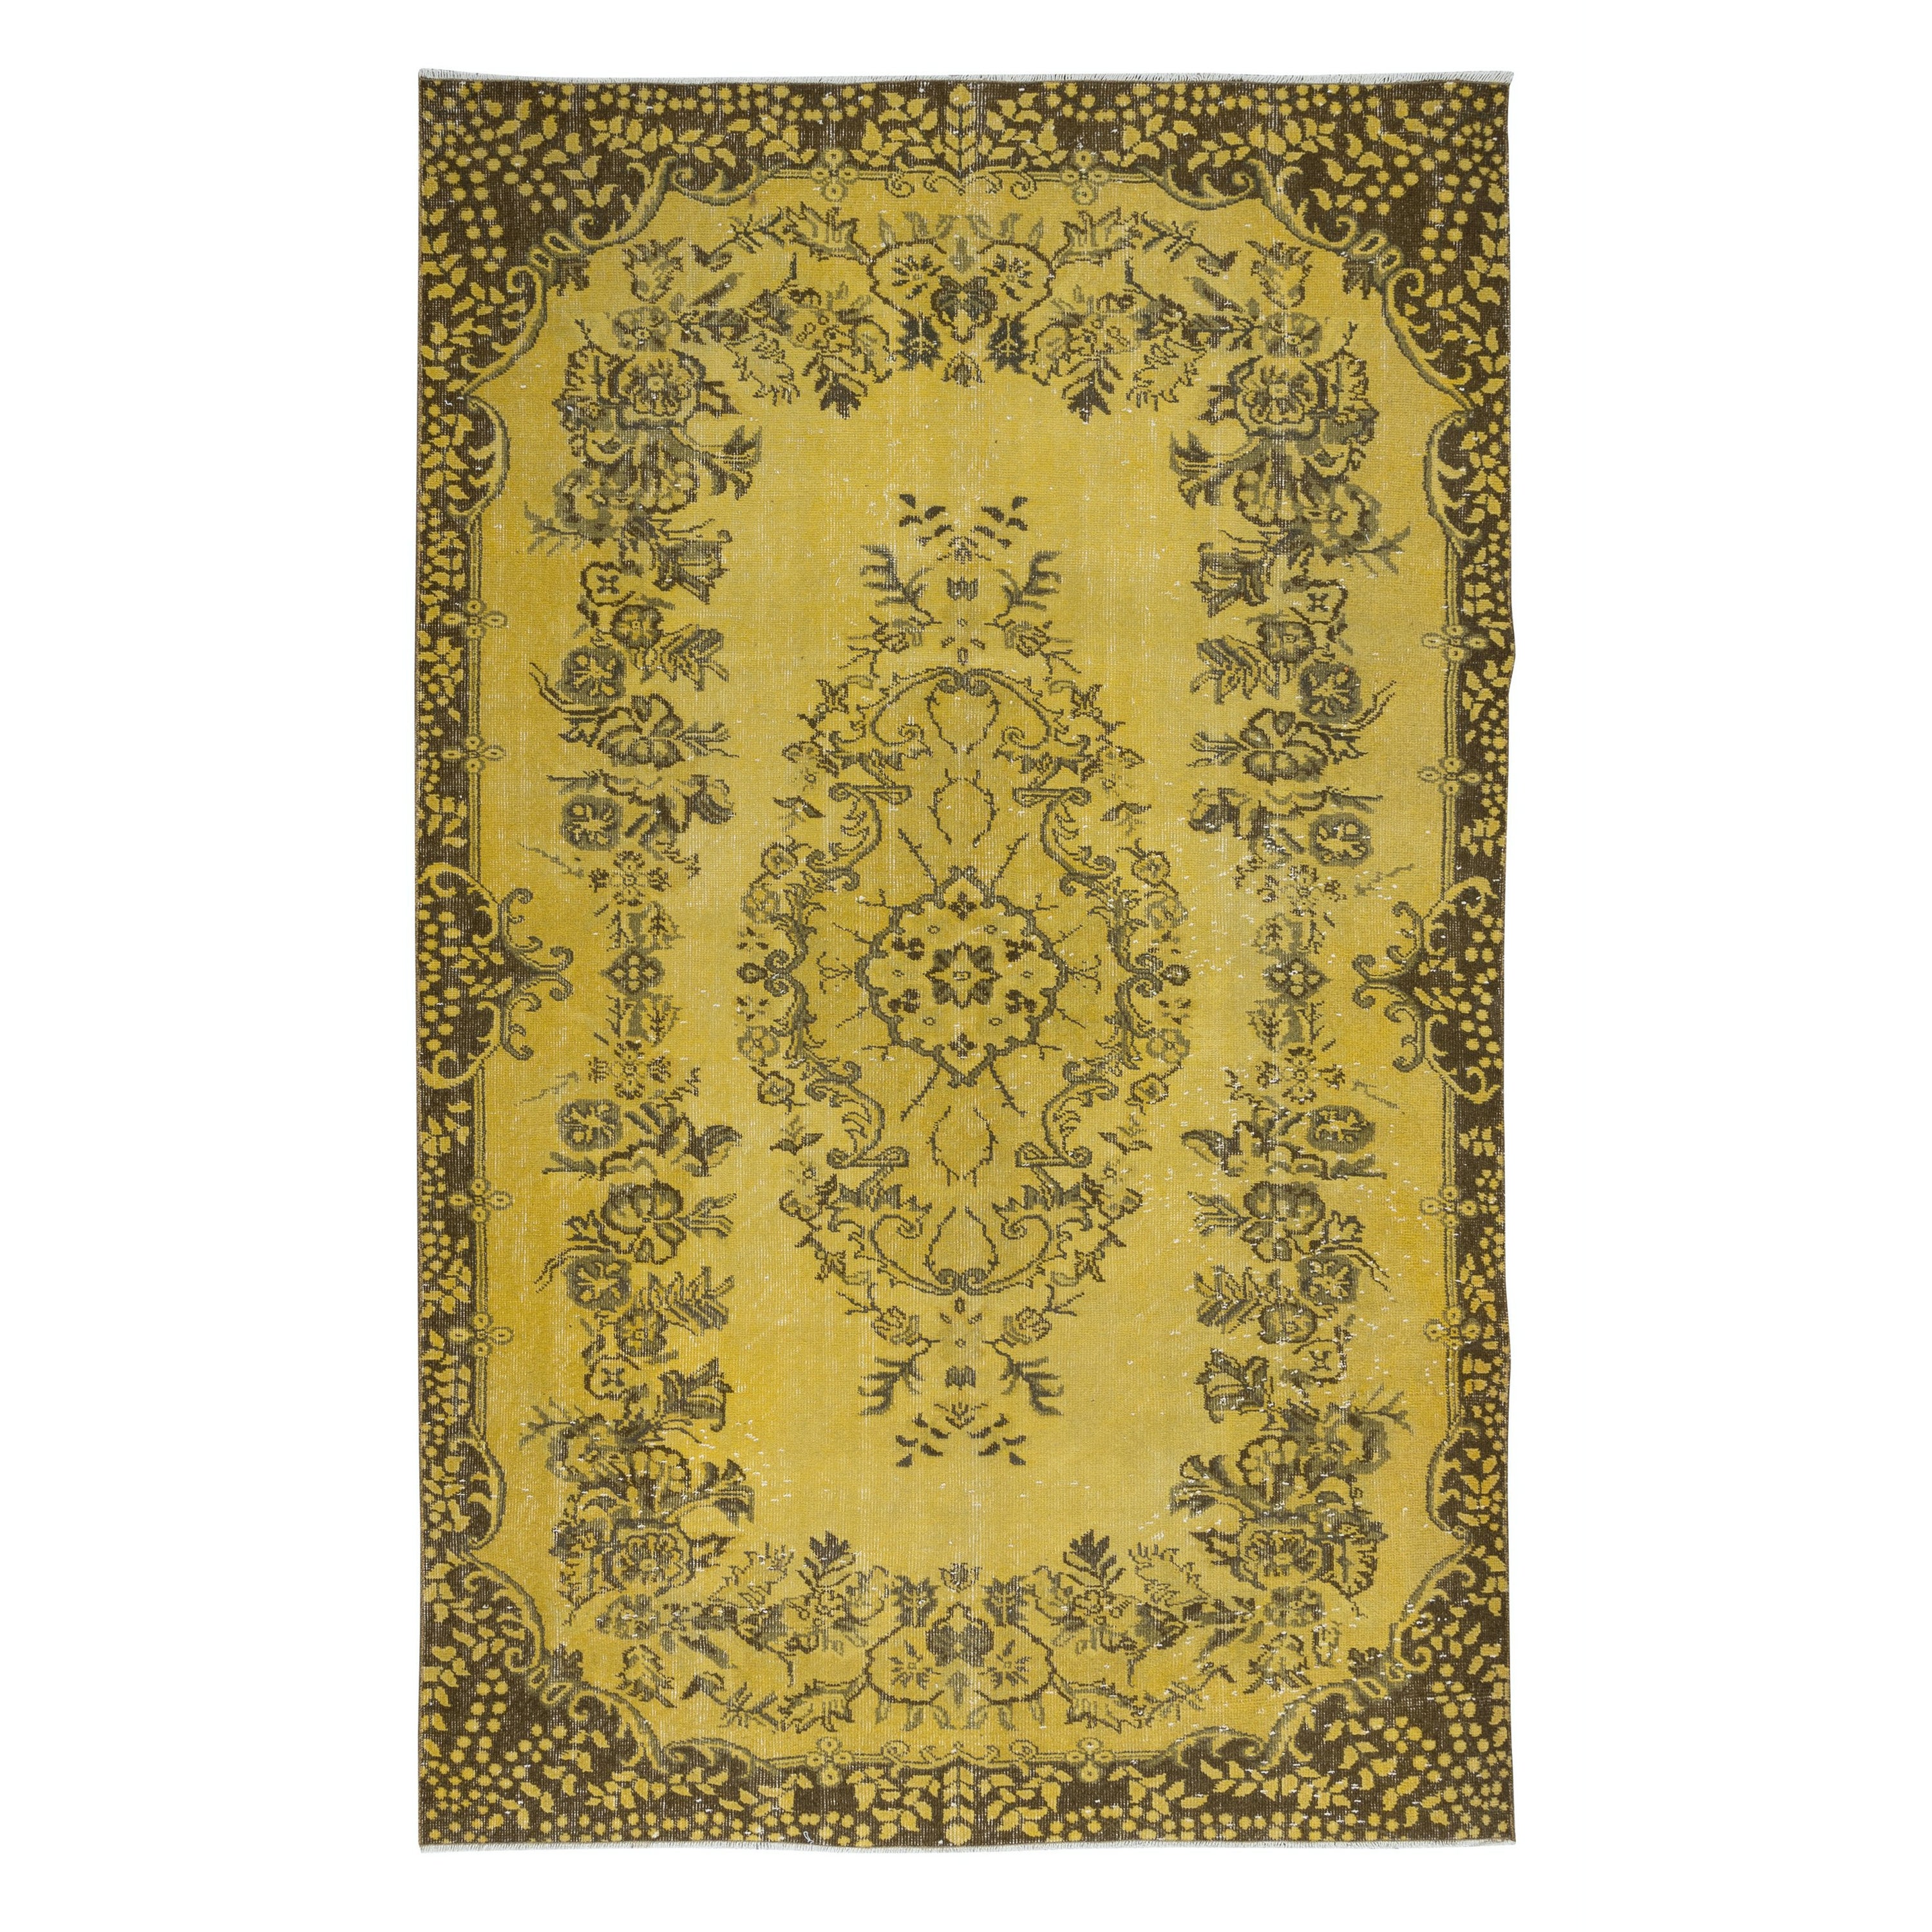 5.8x9,3 Ft Moderner handgefertigter türkischer Teppich mit Medaillon-Design und gelbem Hintergrund